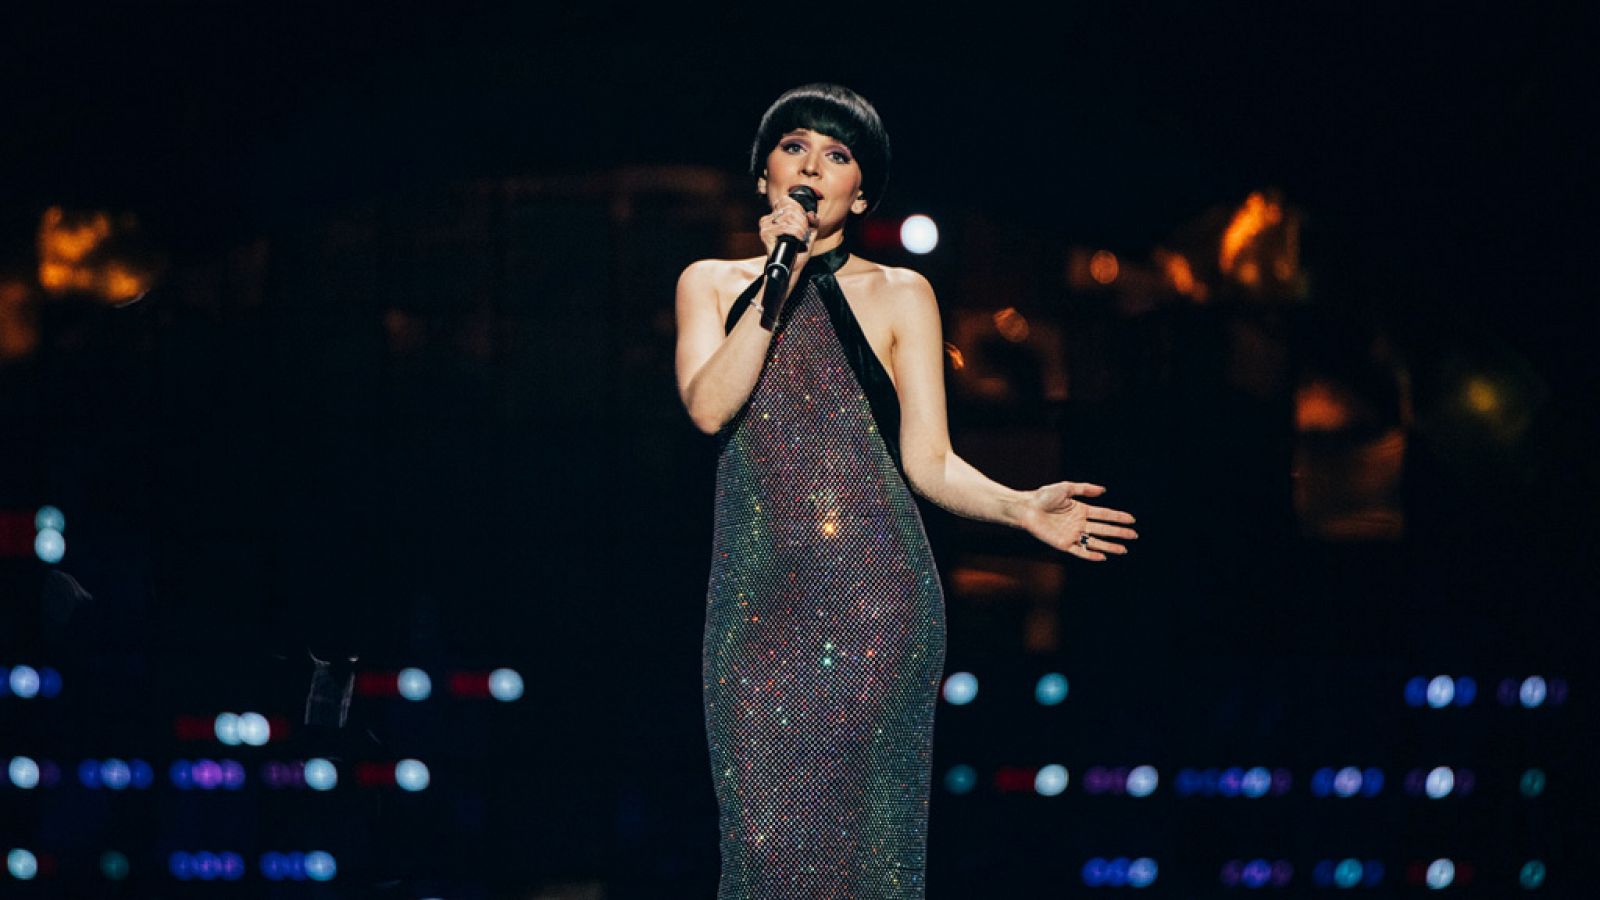 Eurovisión 2022 - Lituania: Monika Liu canta "Sentimentai" en la final